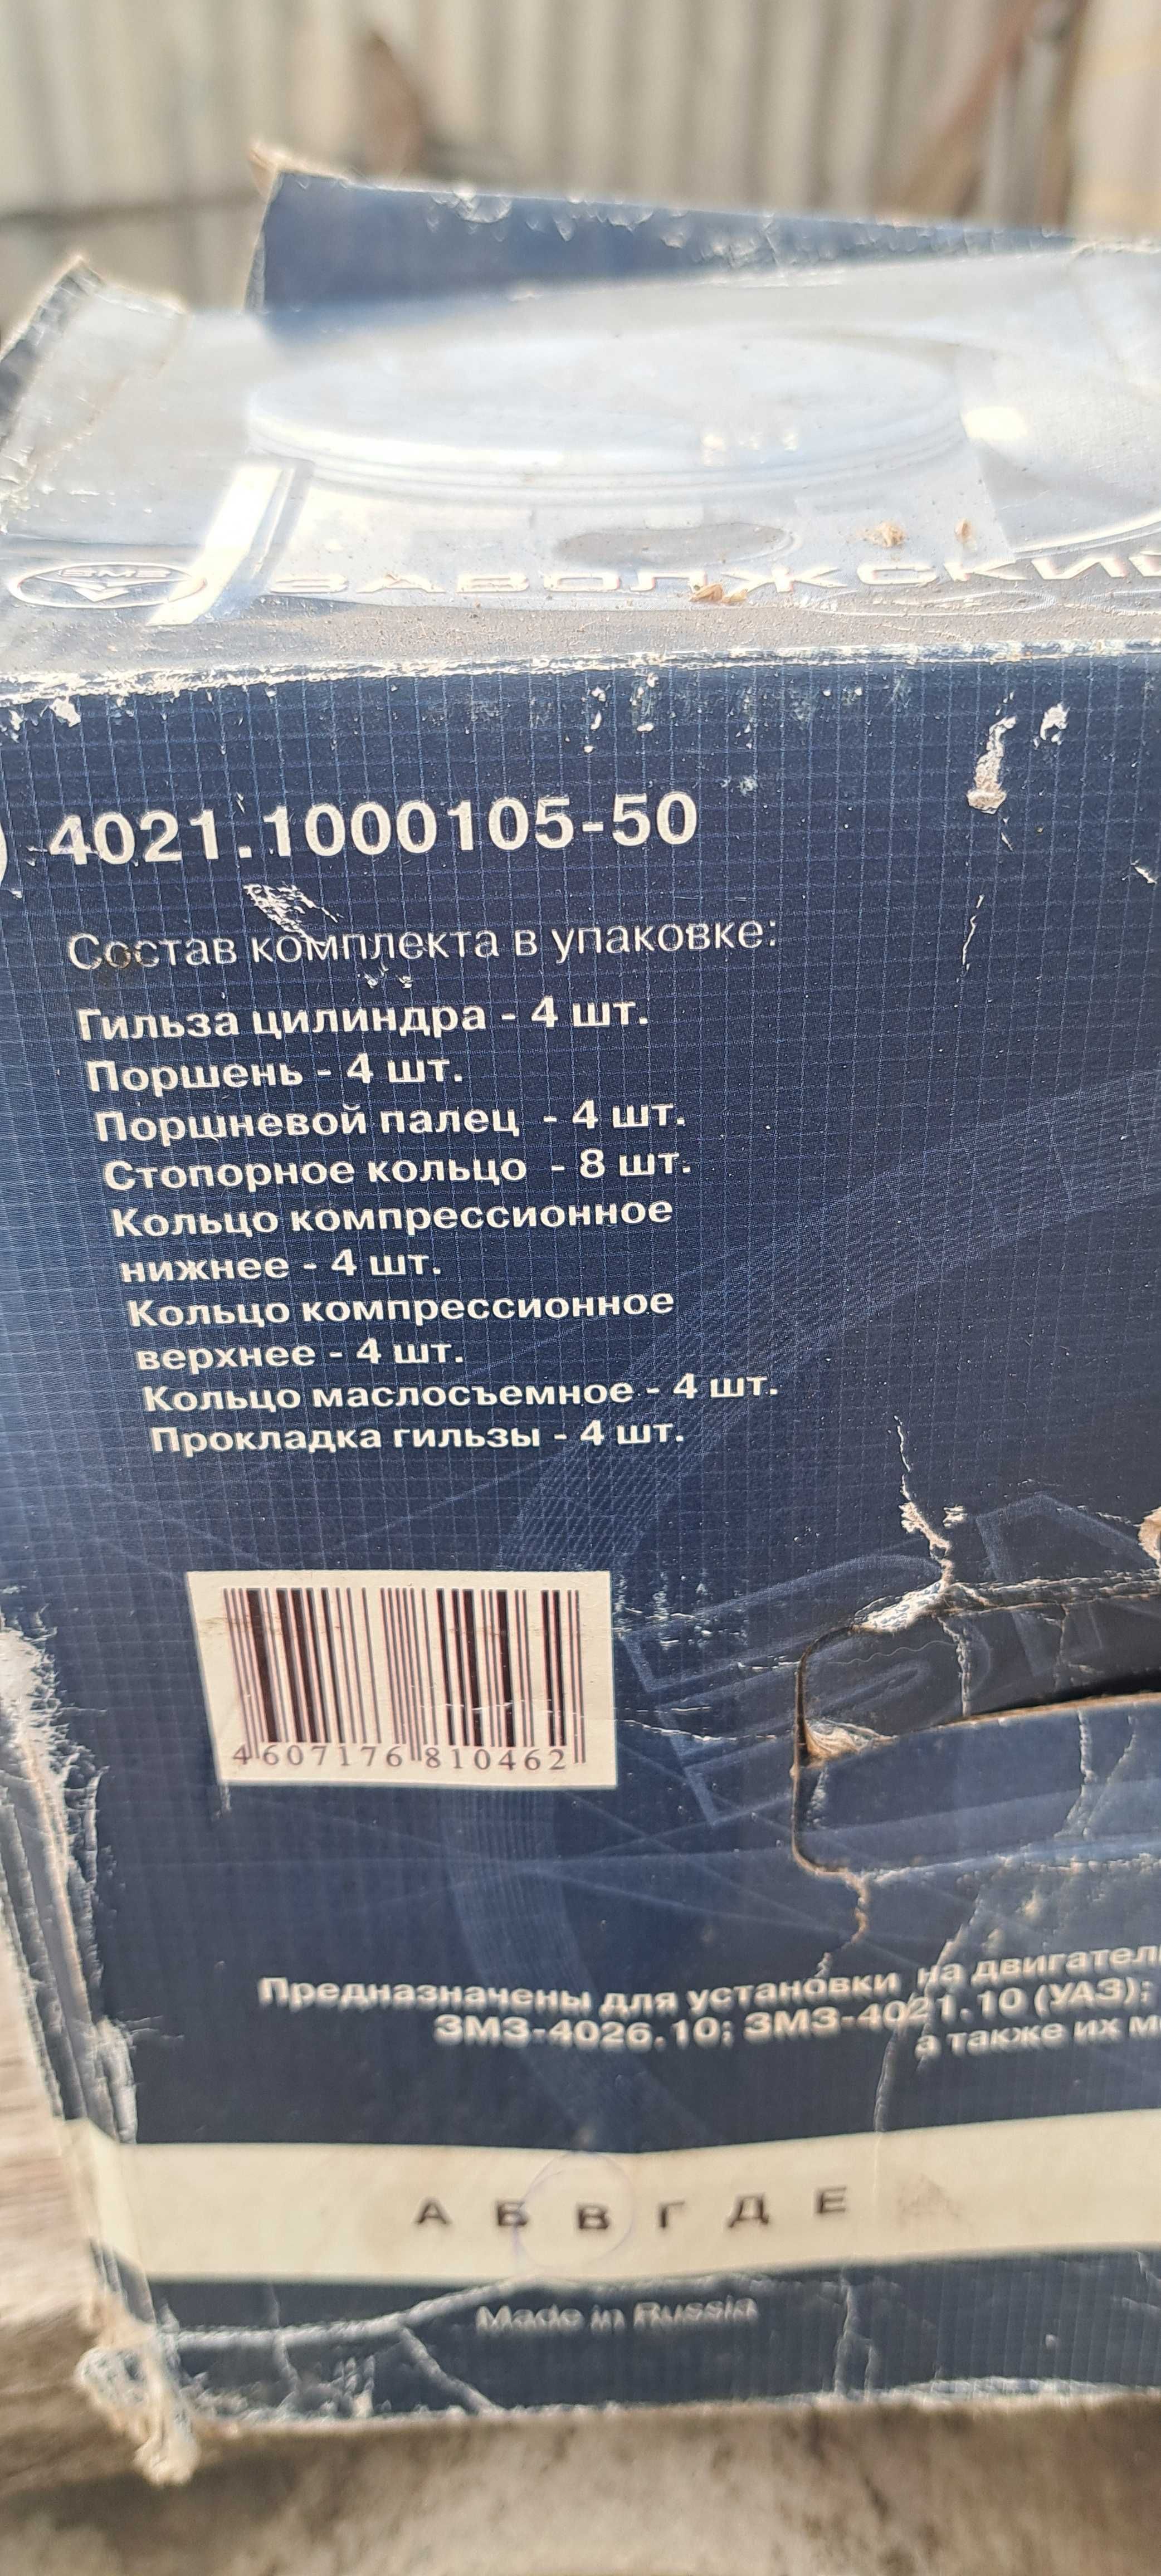 Продам Гильзо-комплект ГАЗ zmz 4021.1000105-50